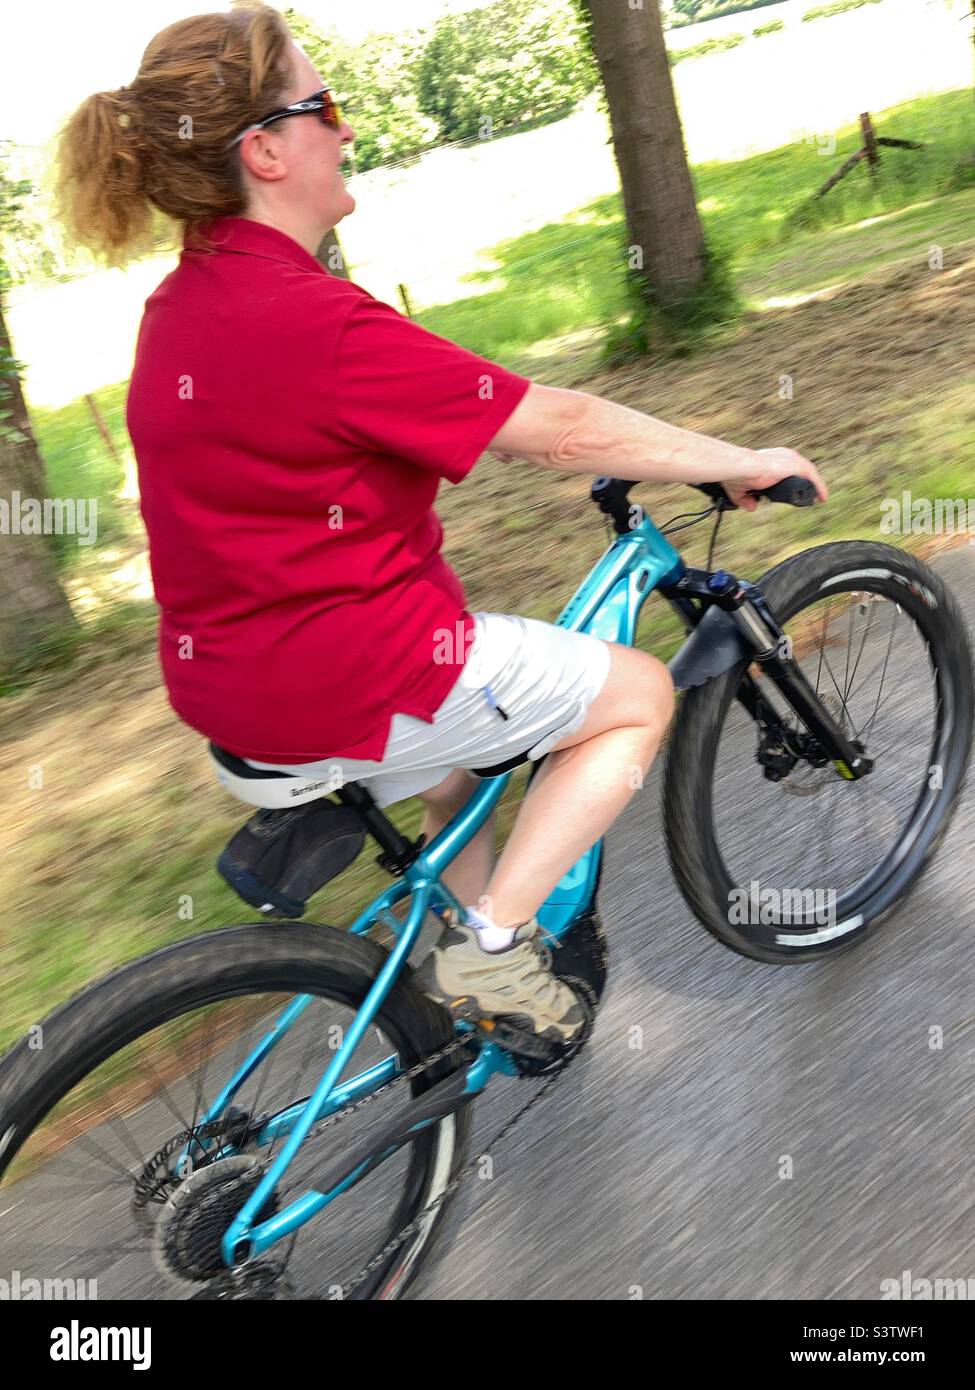 Woman riding an e-bike Stock Photo